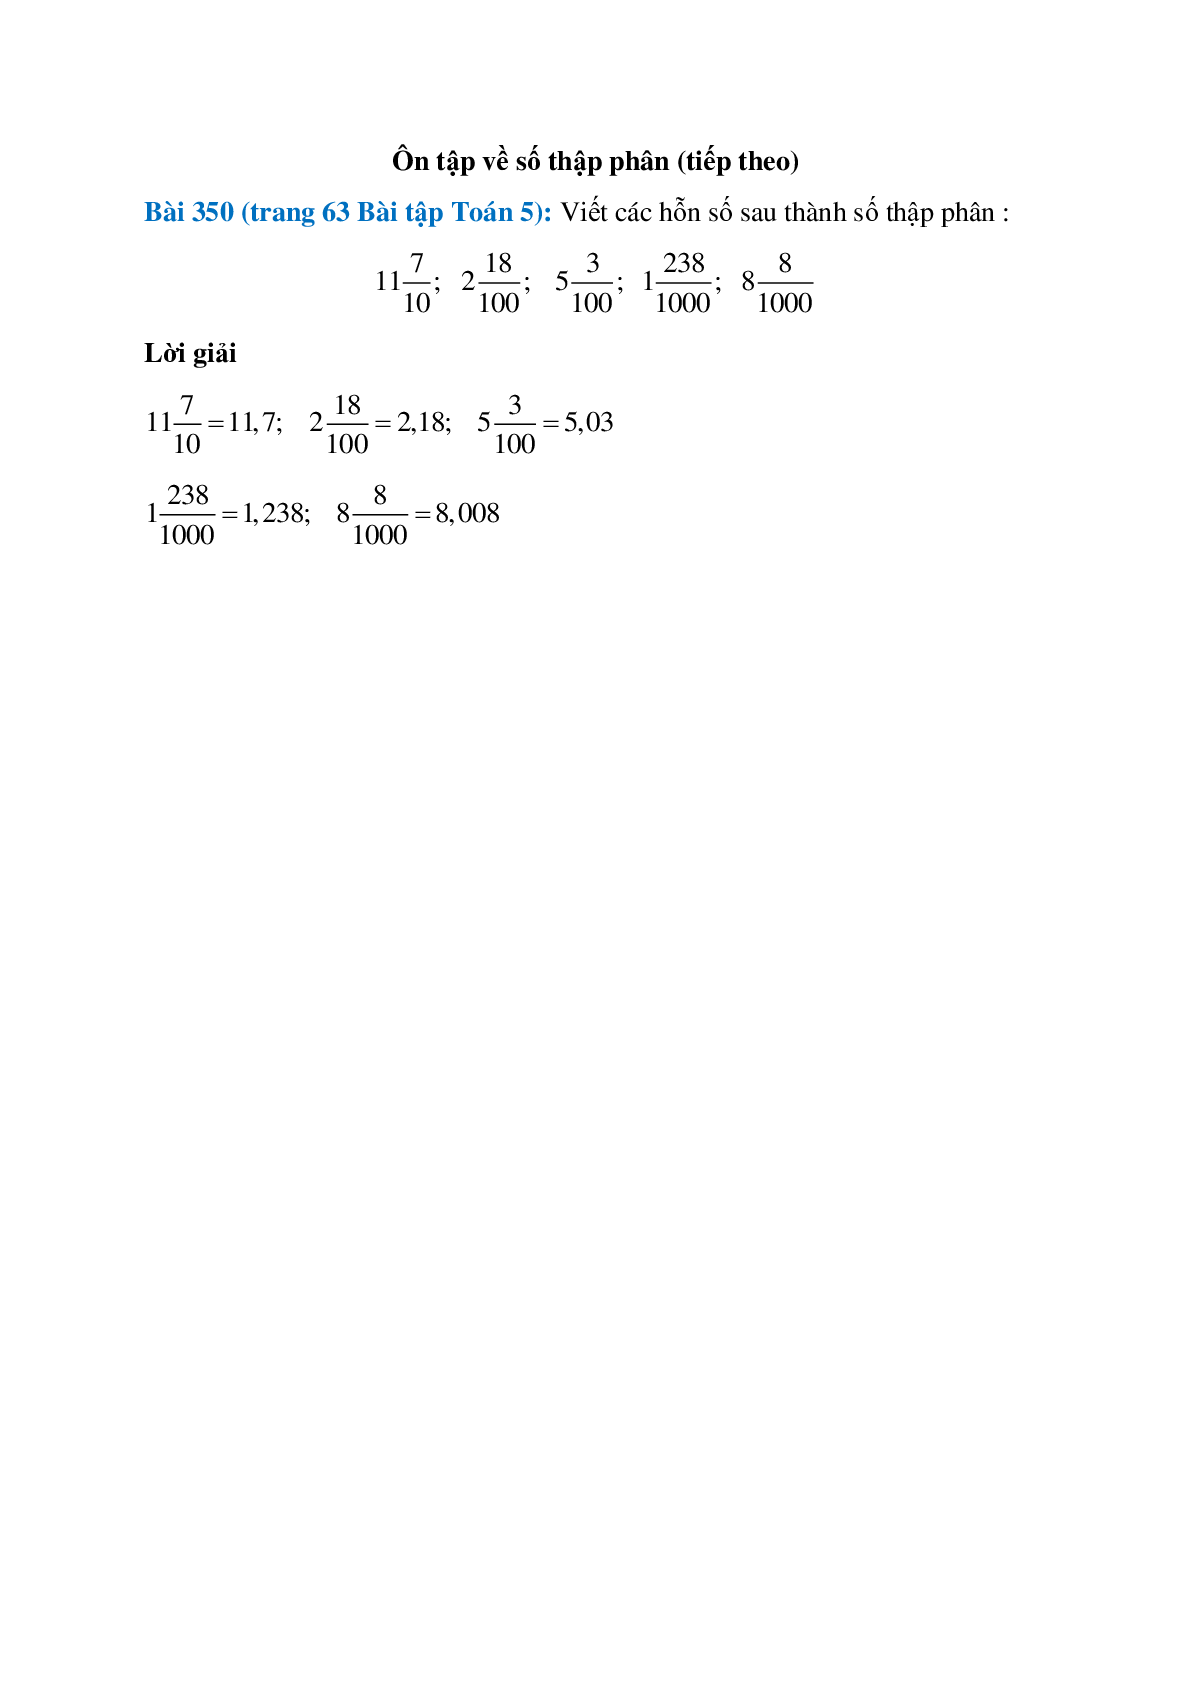 Viết các hỗn số sau thành số thập phân: 11(7/10); 2(18/100) (trang 1)